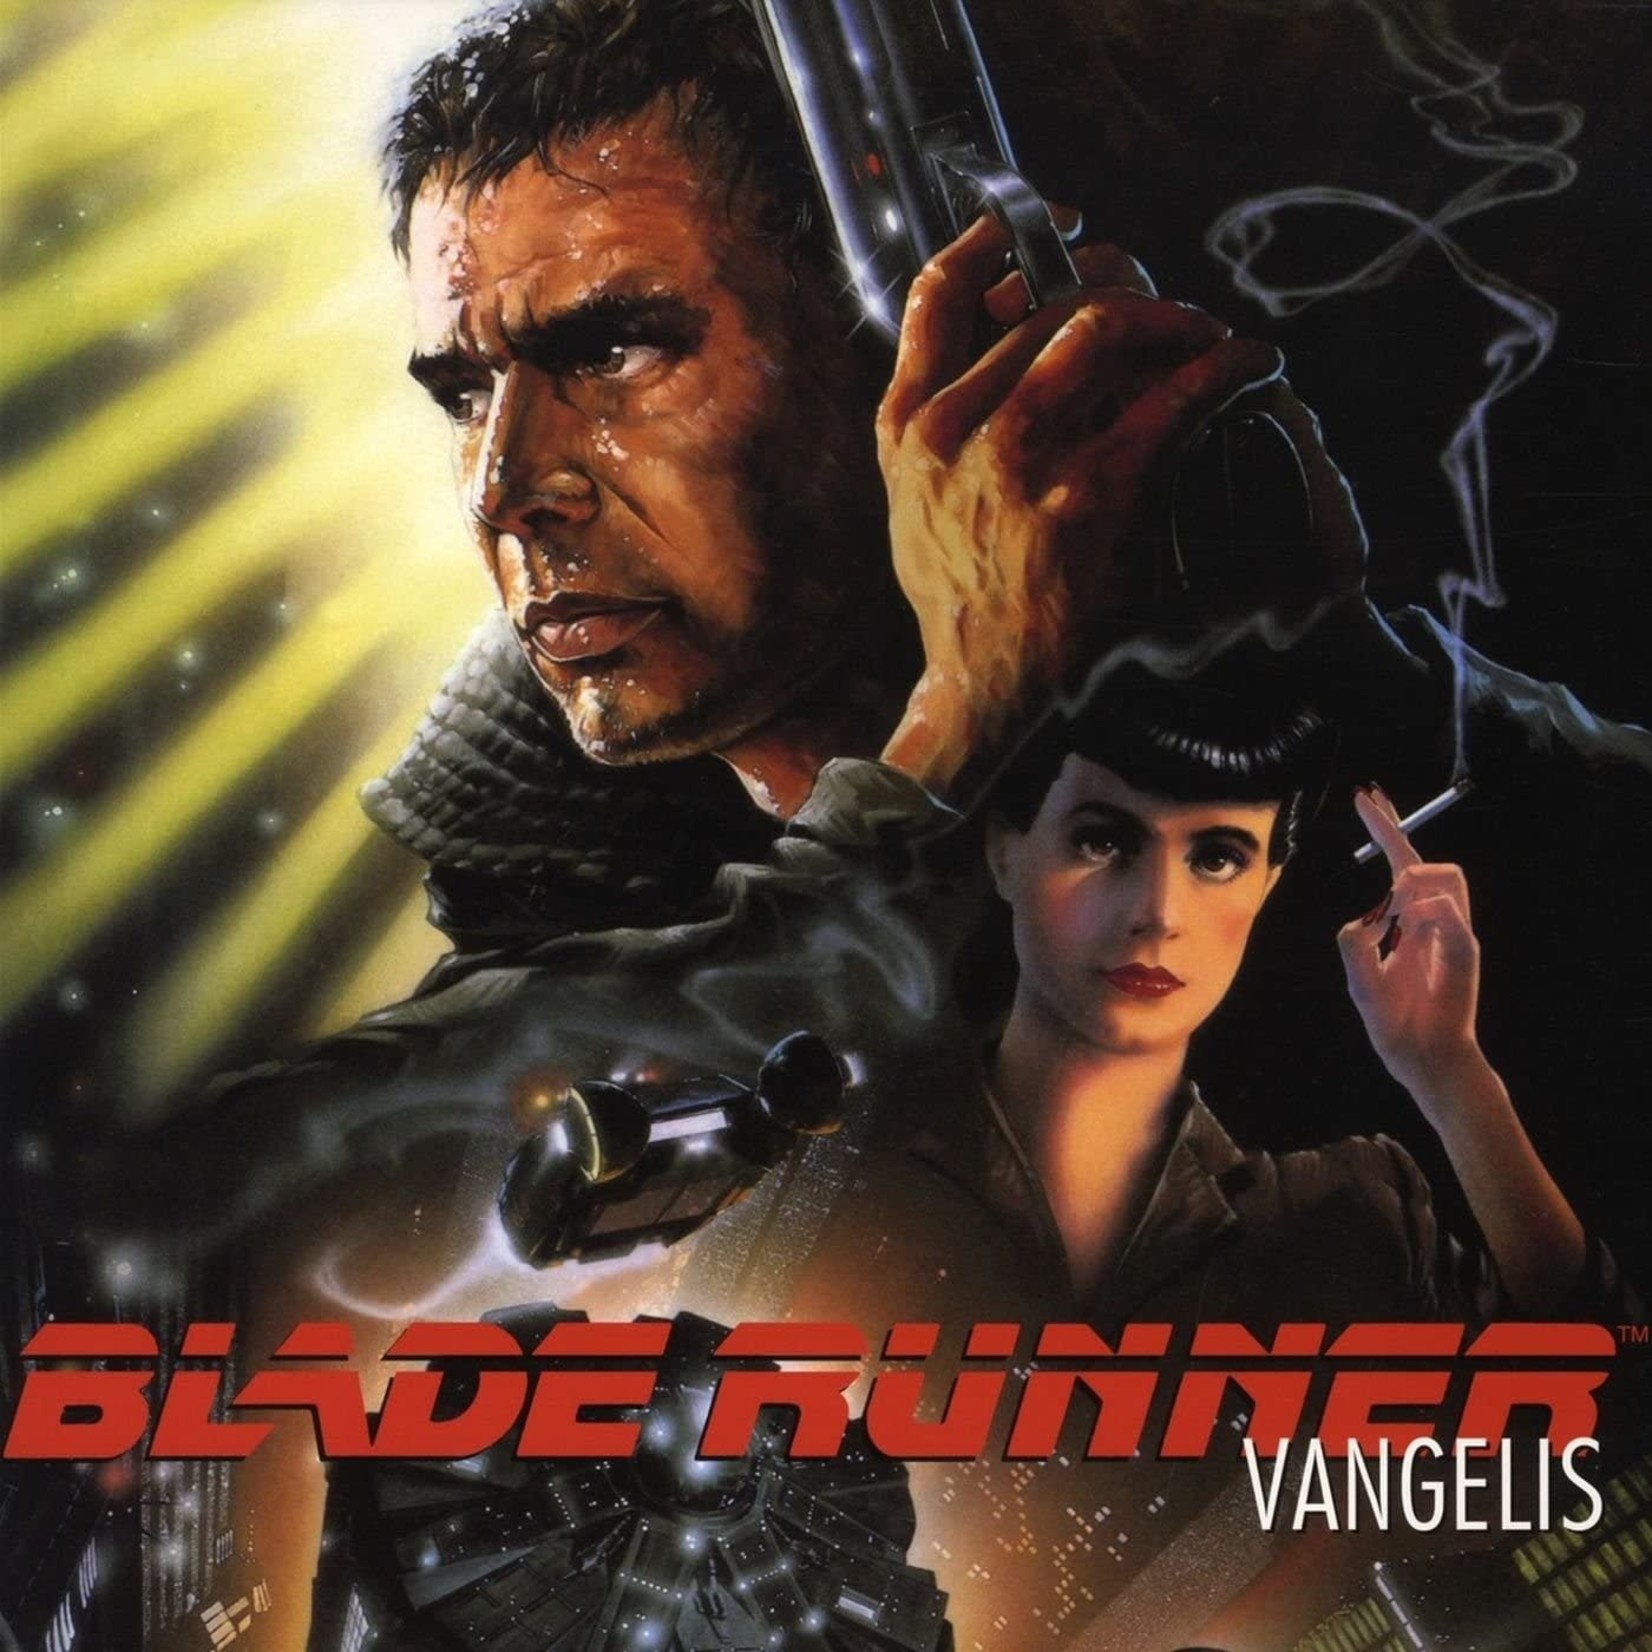 Soundtrack Vangelis - Blade Runner